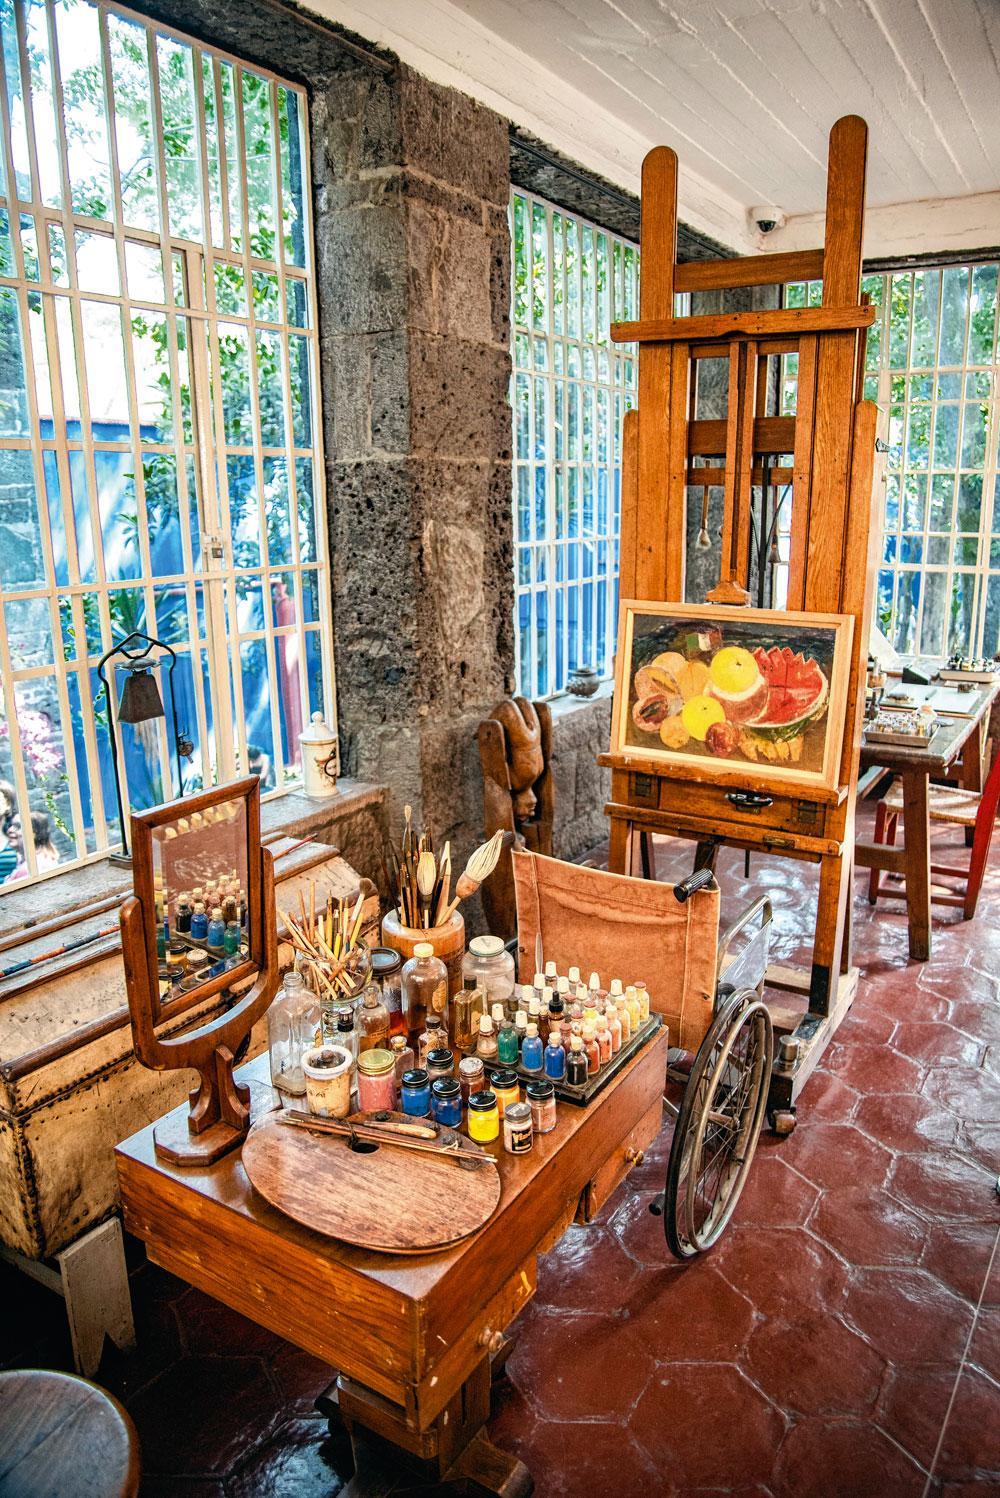 Frida's atelier, met haar ezel, haar spiegel, haar verf en haar rolstoel.